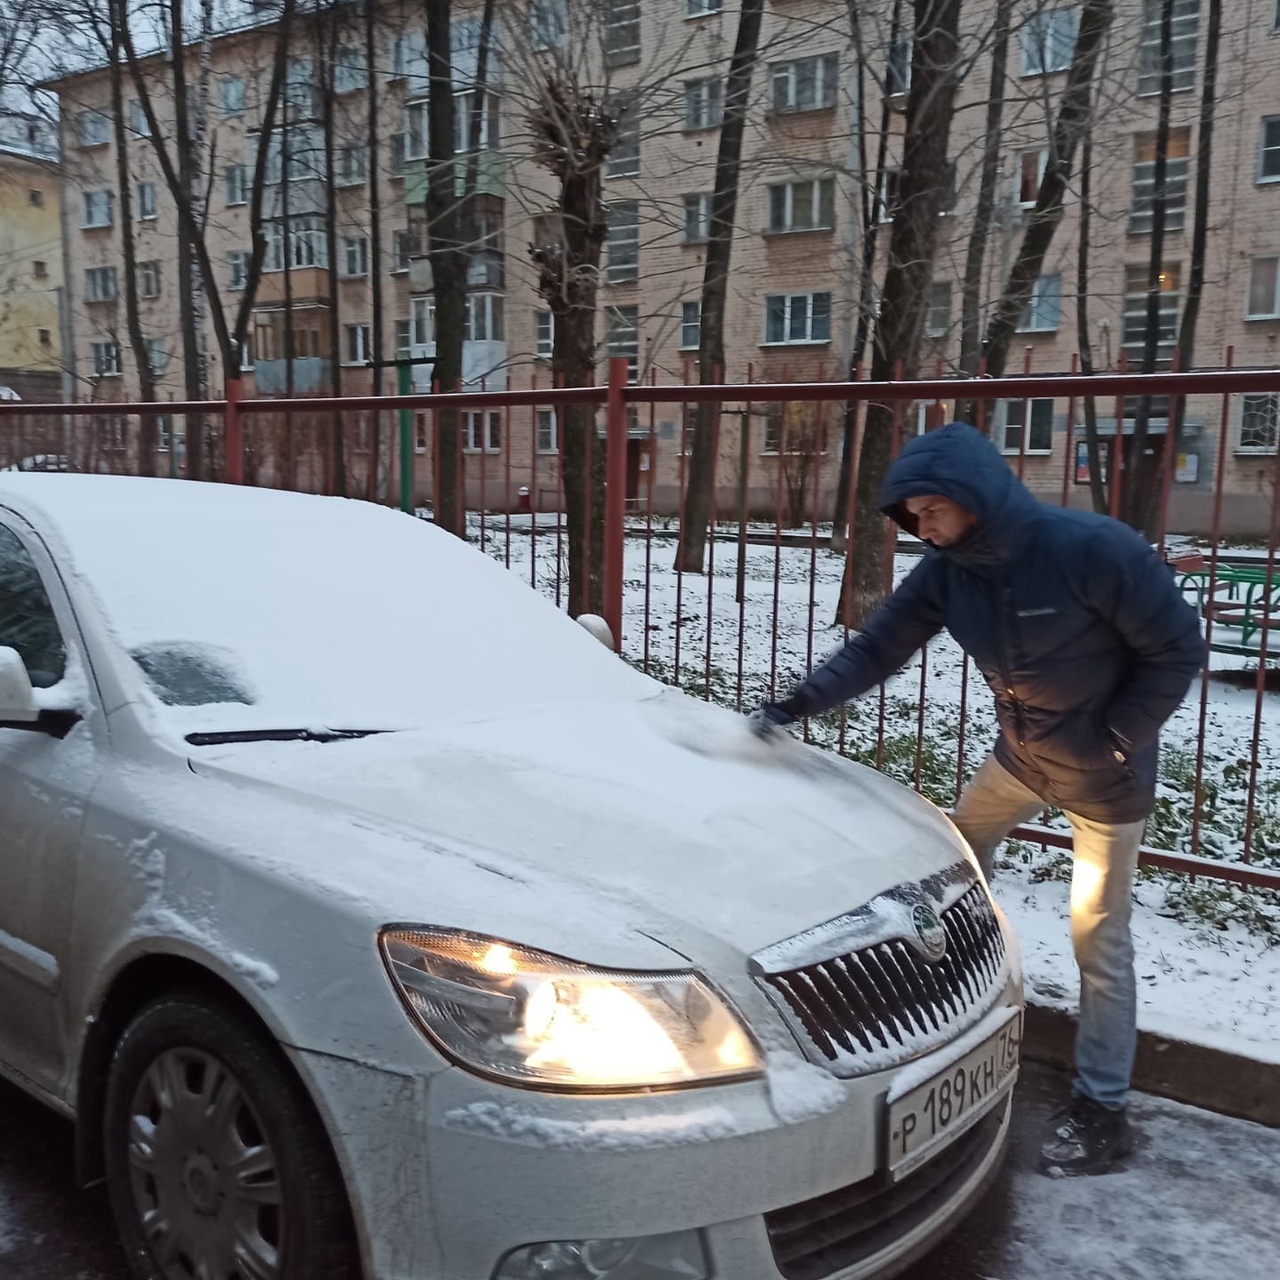 "Будем плавить на месте": в Ярославле установят снегоплавильные станции